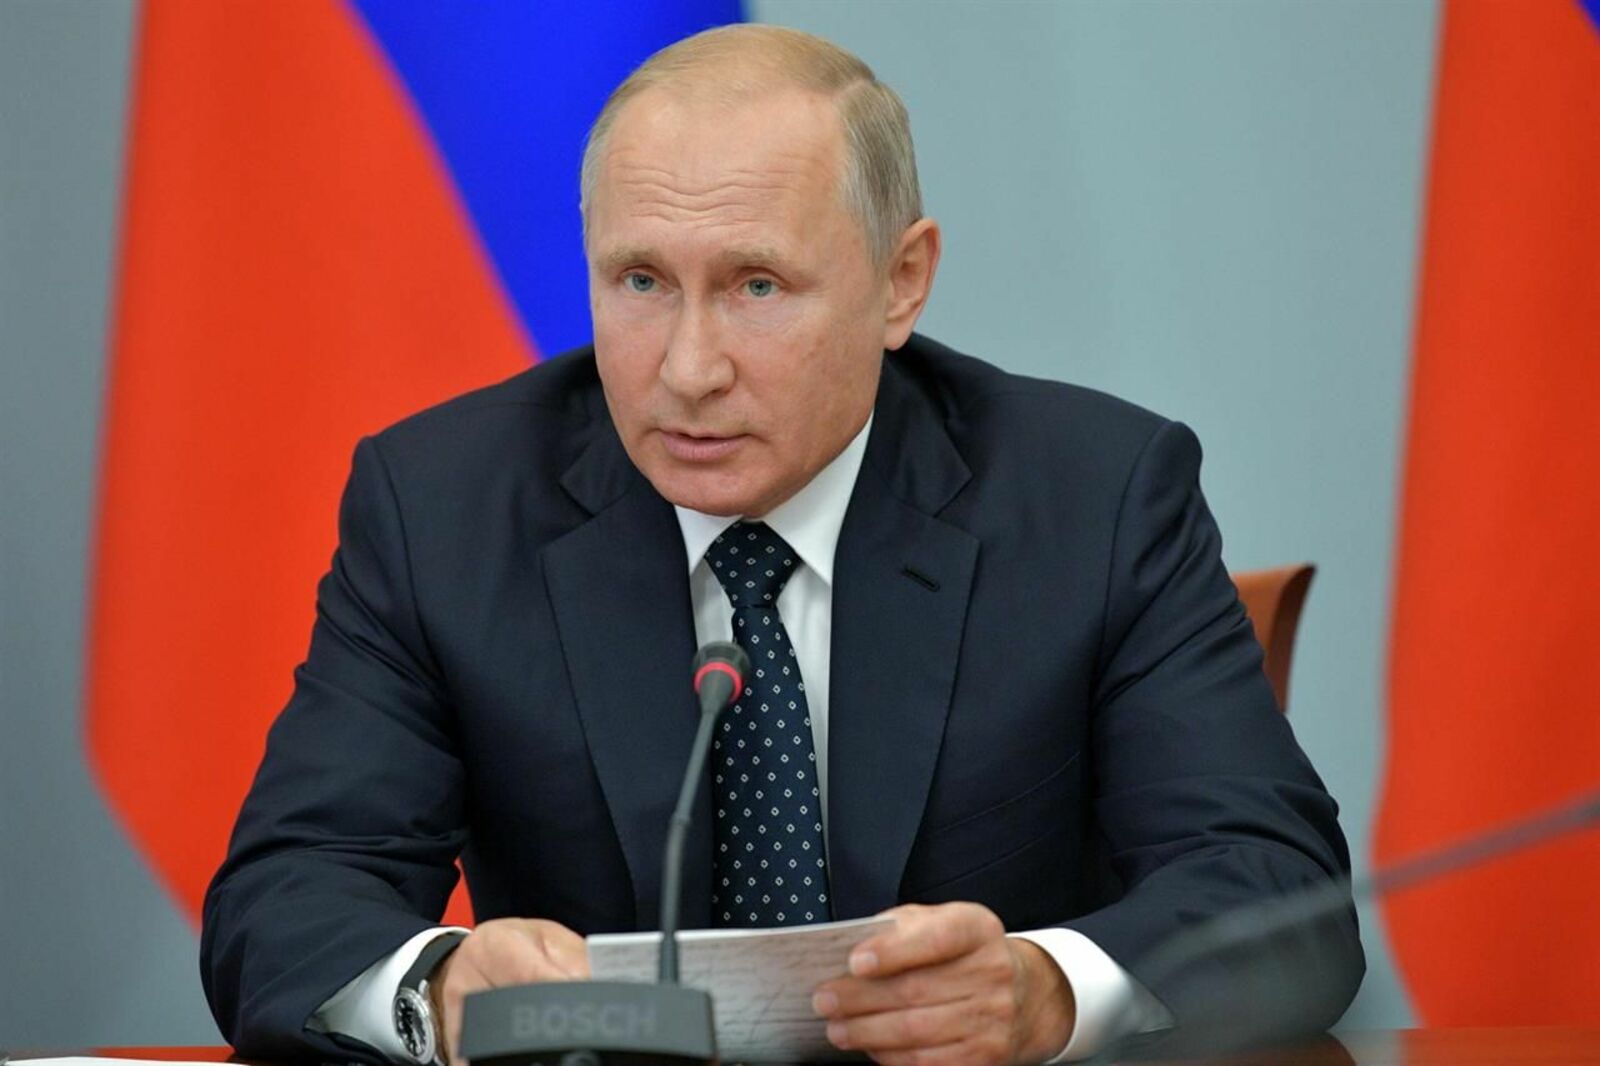 Путин заявил об историческом минимуме безработицы в России